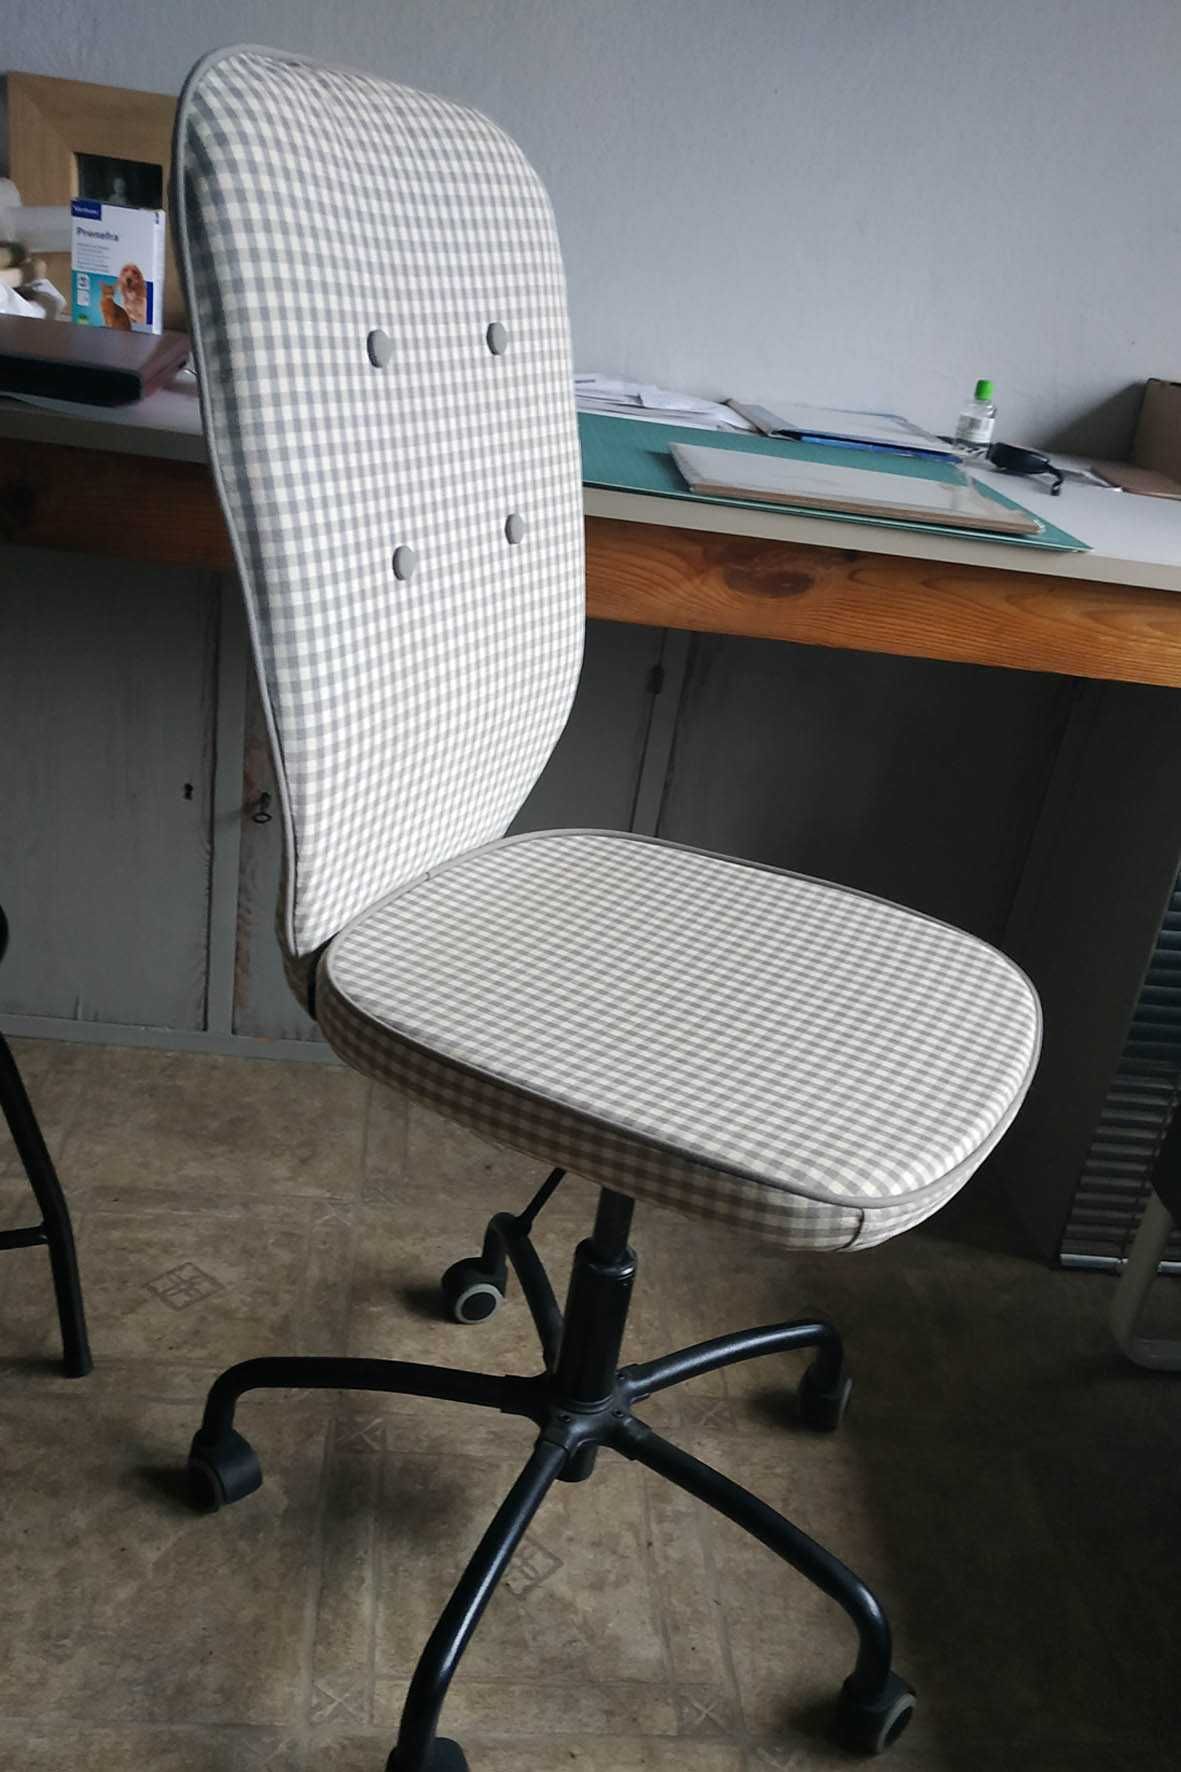 Krzesło biurowe. Ikea.